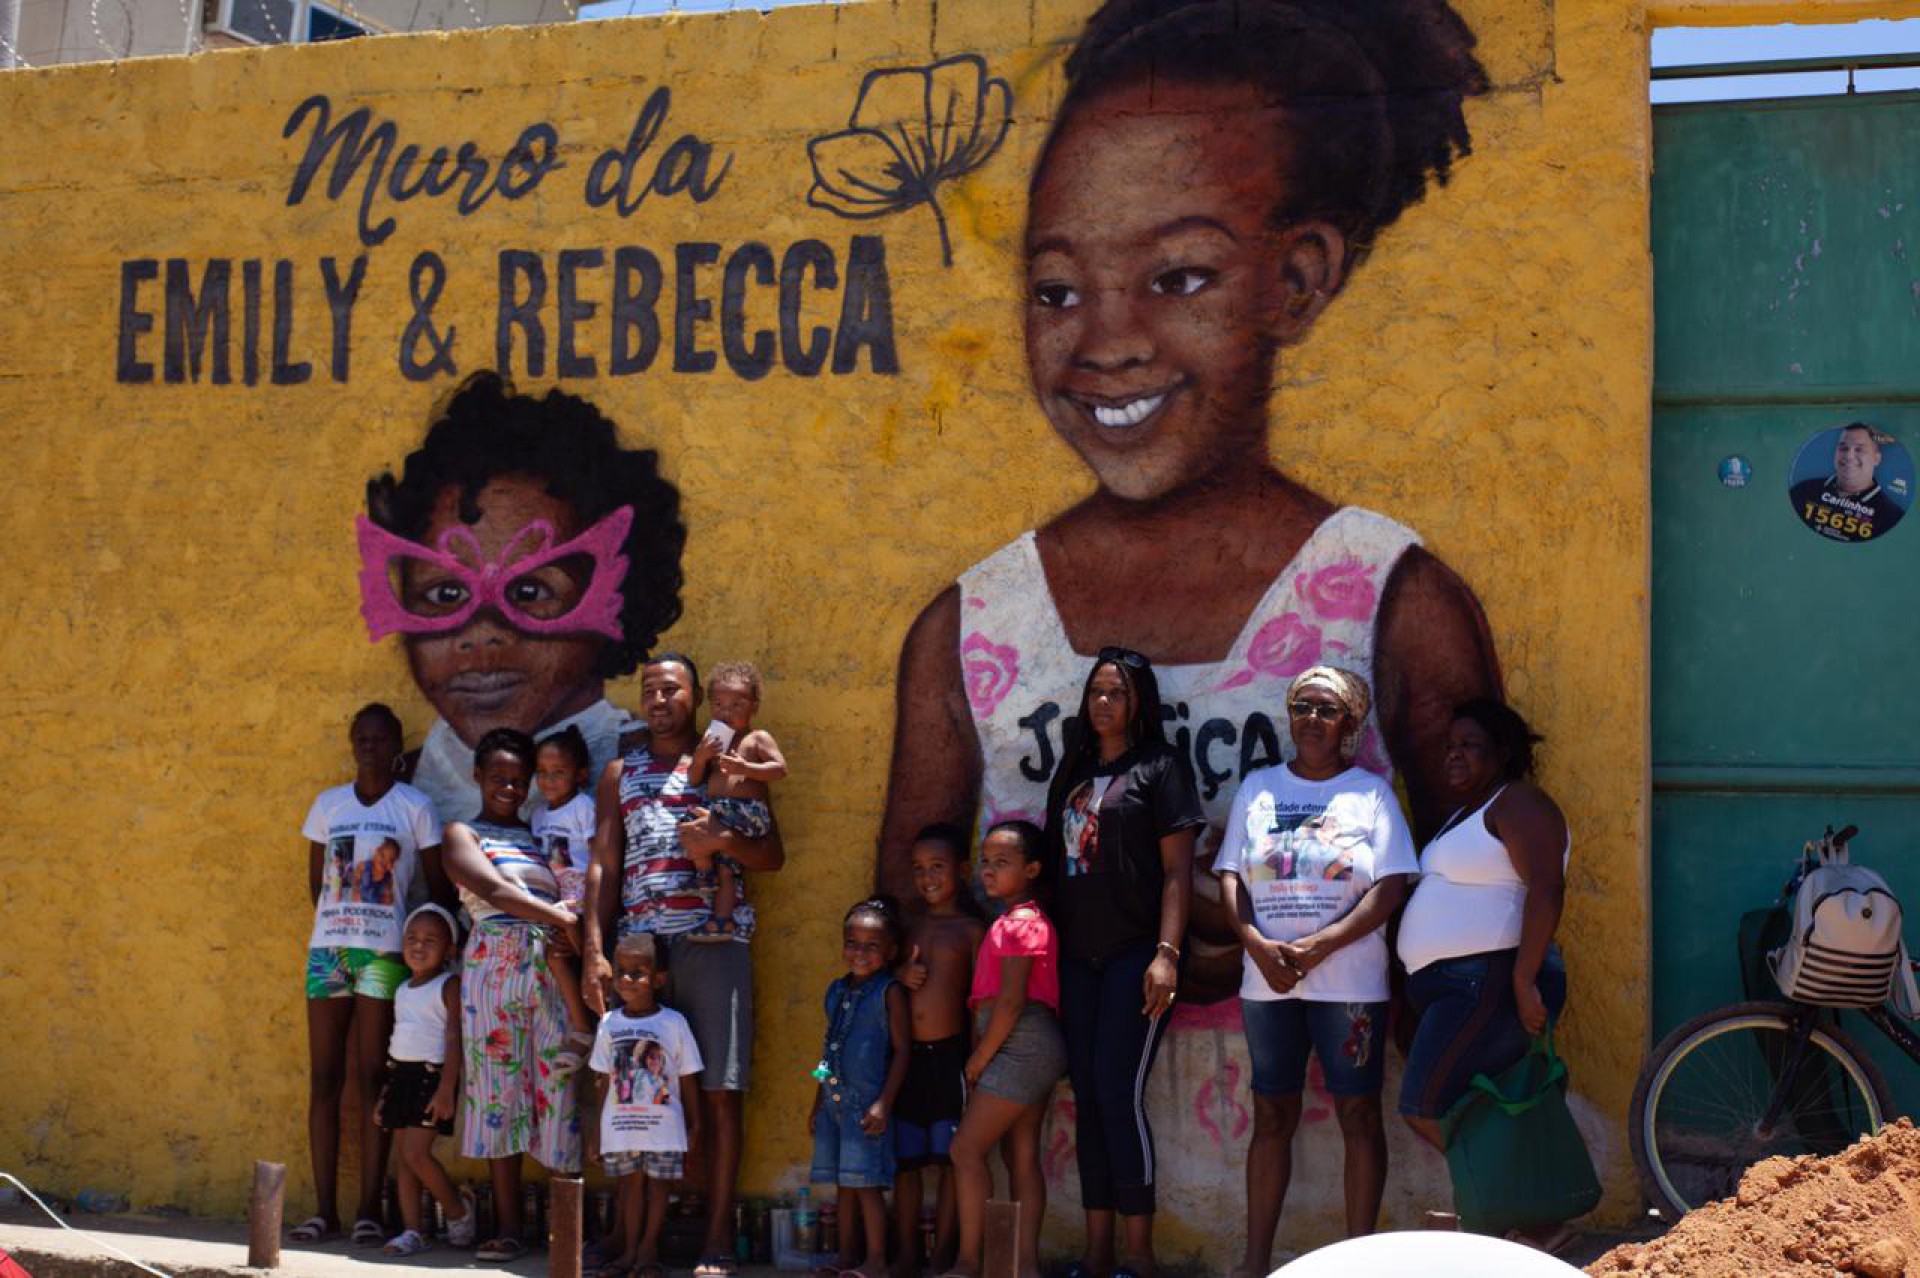 Moradores homenageiam as primas Emily e Rebeca com um muro grafitado com o rosto delas. As meninas foram assassinadas na porta de casa em dezembro de 2020 - Divulgação/ Carol Brandão (Voz da Baixada)